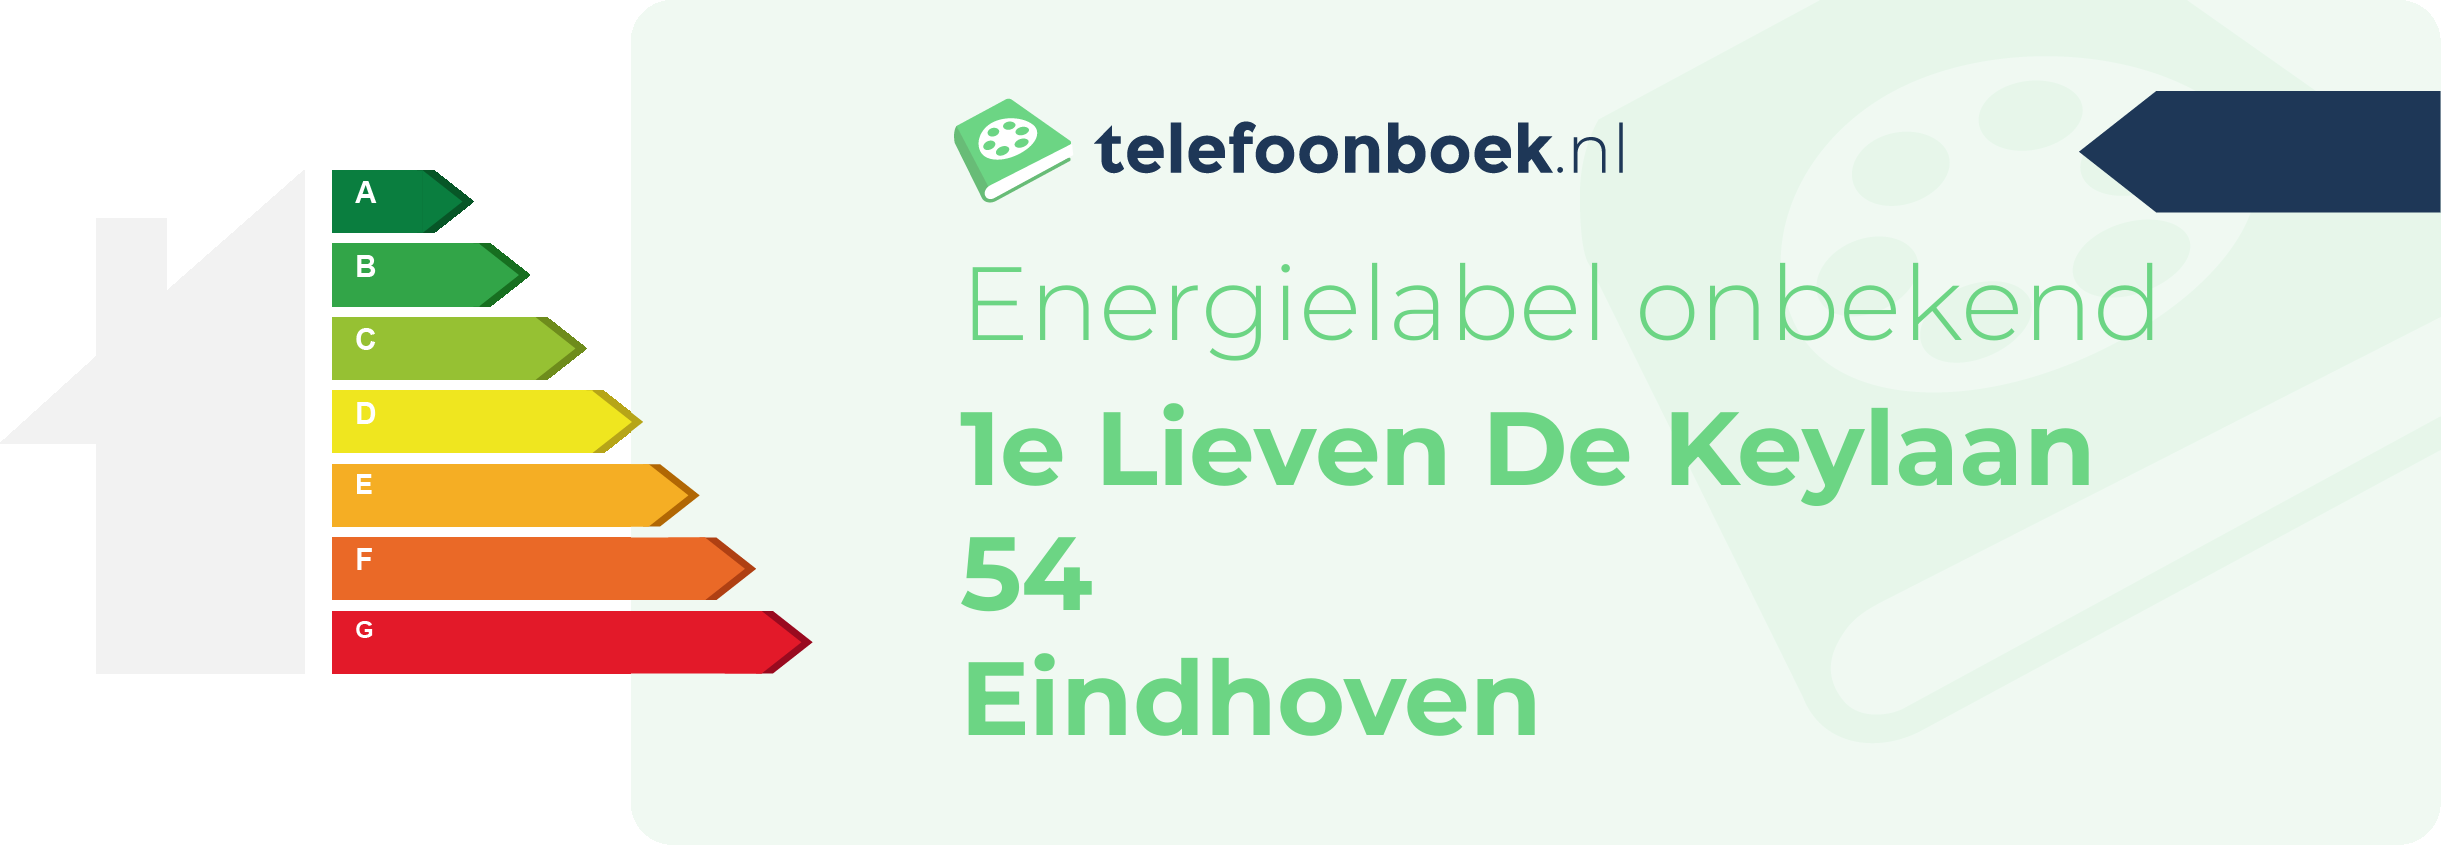 Energielabel 1e Lieven De Keylaan 54 Eindhoven